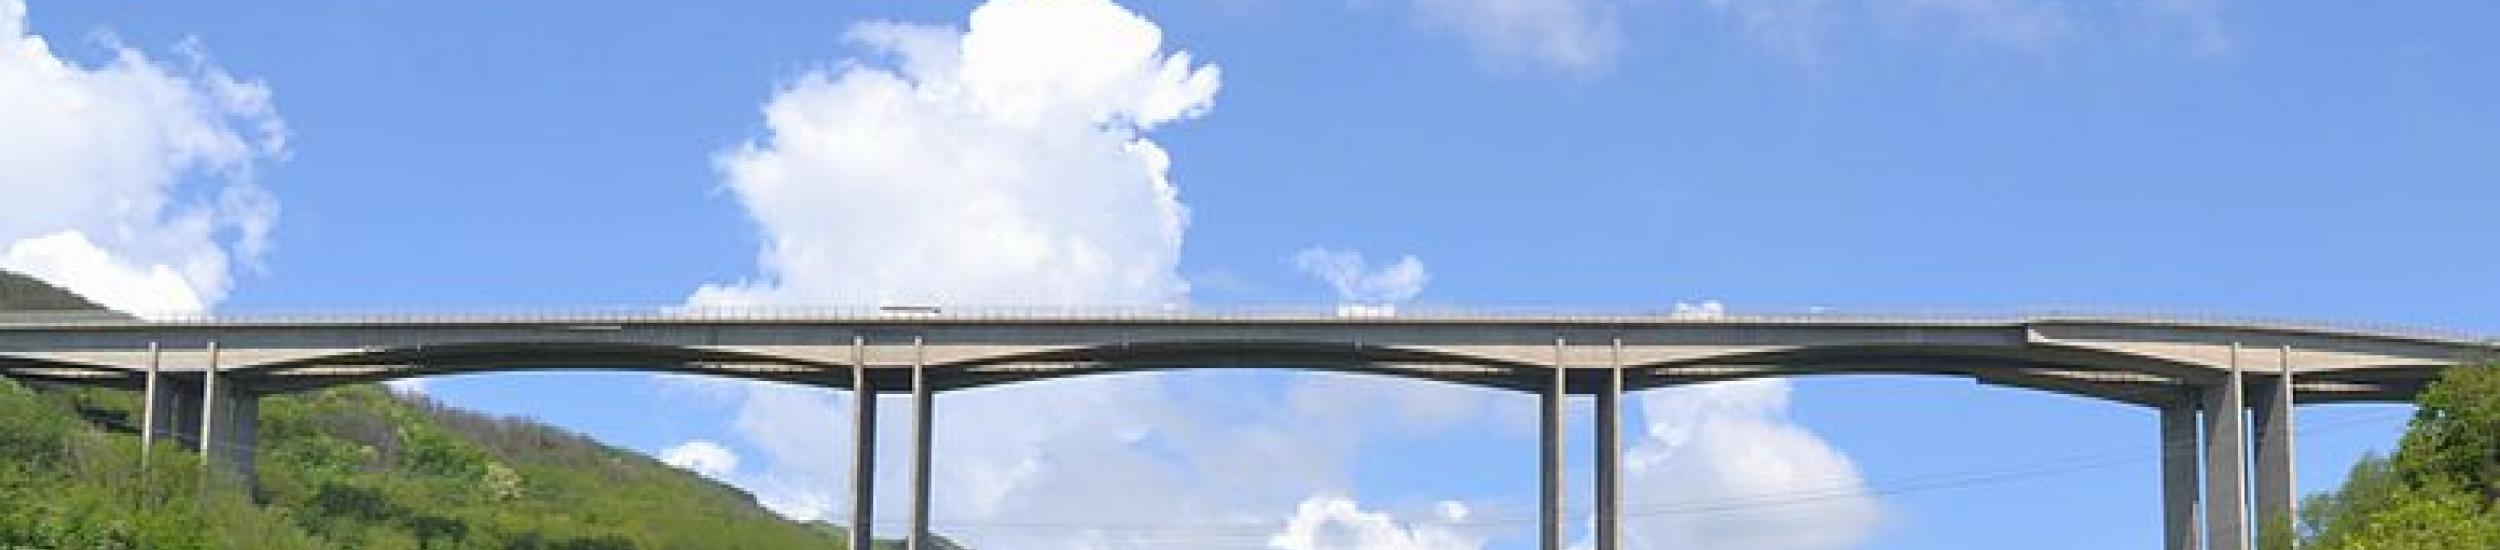 News: Mele, sulla sp 456 del turchino possibili fino a febbraio sotto il viadotto grosexio brevi sospensioni della circolazione